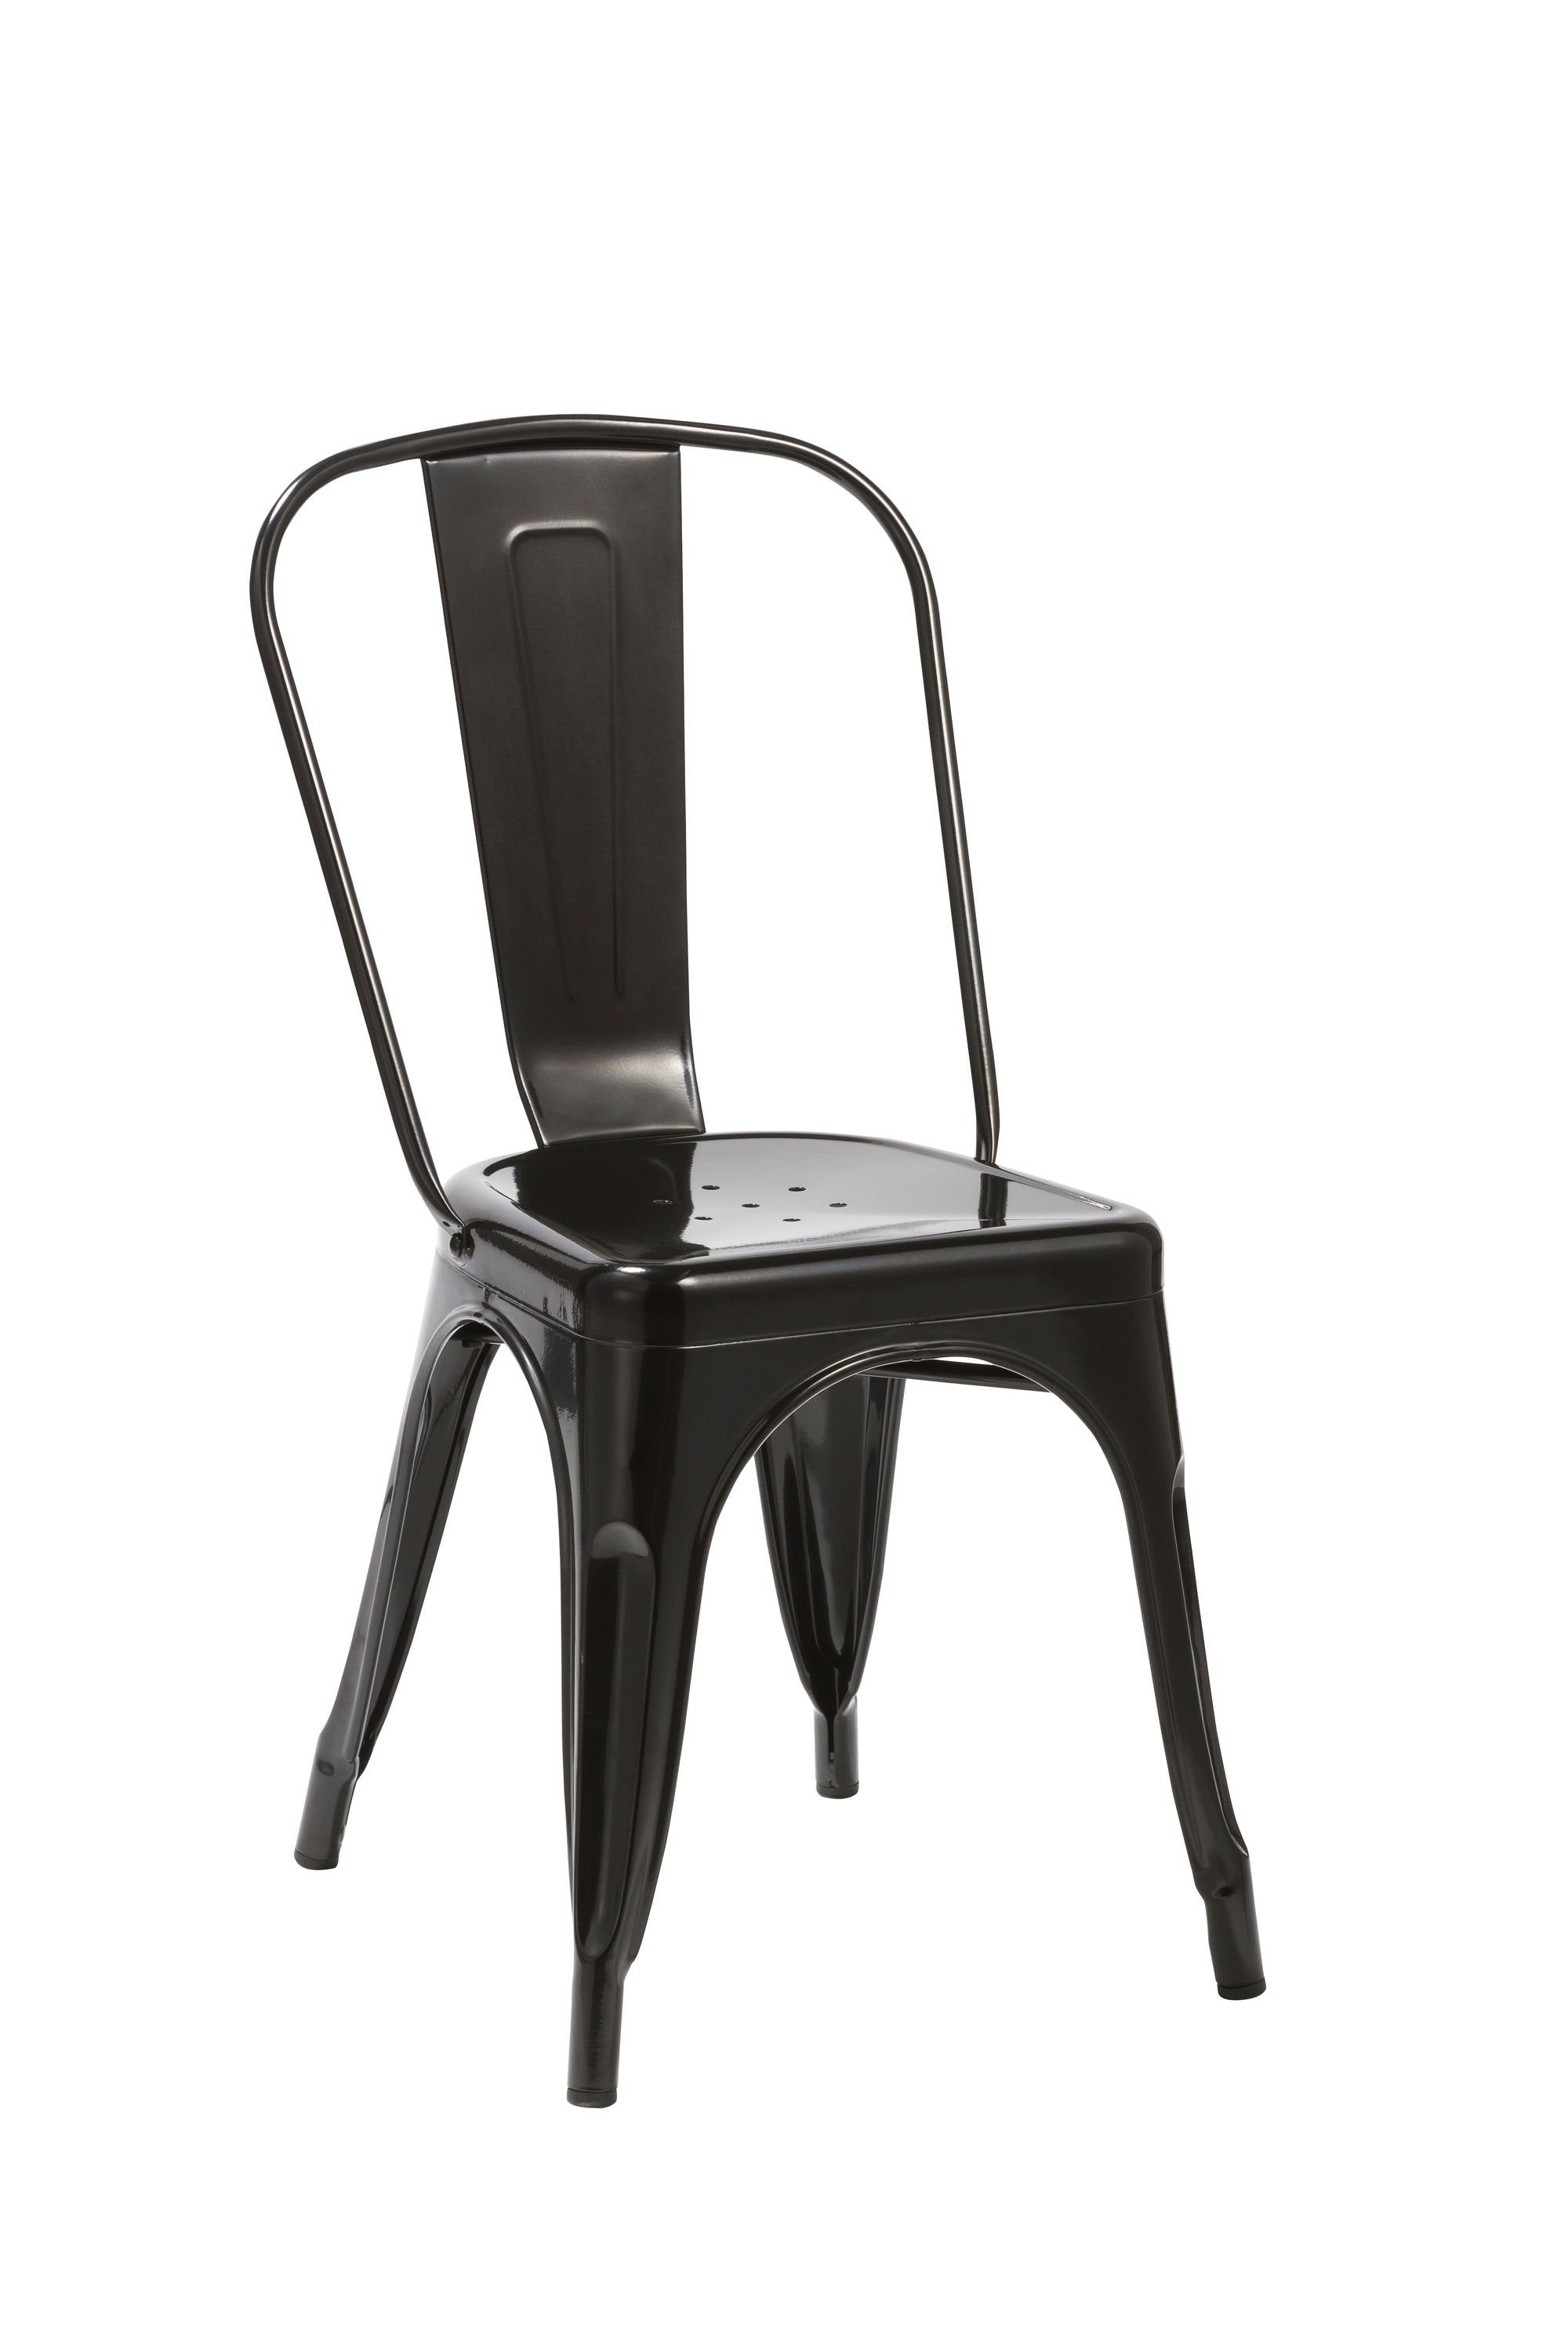 Duhome Esszimmerstuhl, Küchenstuhl Stuhl Esszimmerstuhl aus METALL Sitzfläche aus Holz stapelbar Schwarz